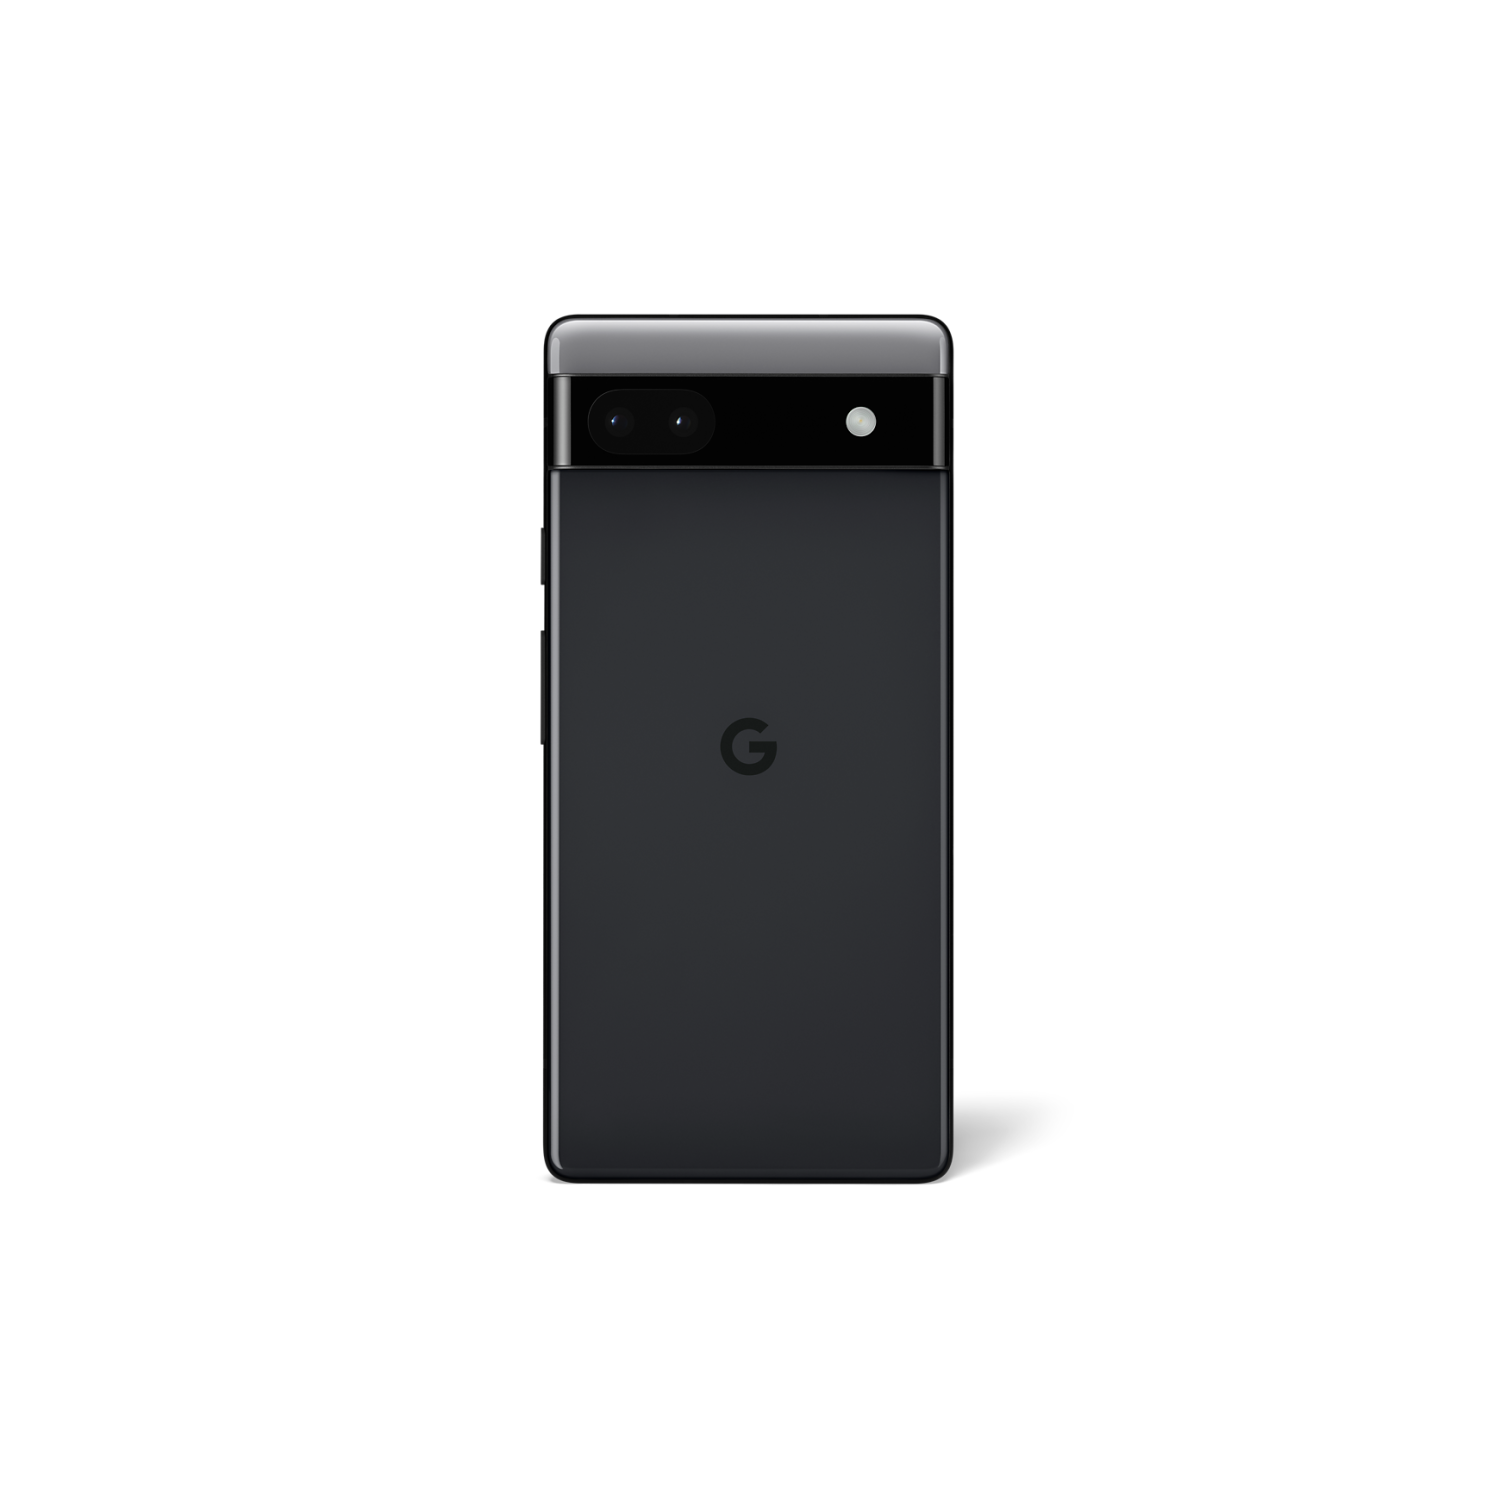 Google Pixel 6a Charcoal 128GB - スマートフォン本体